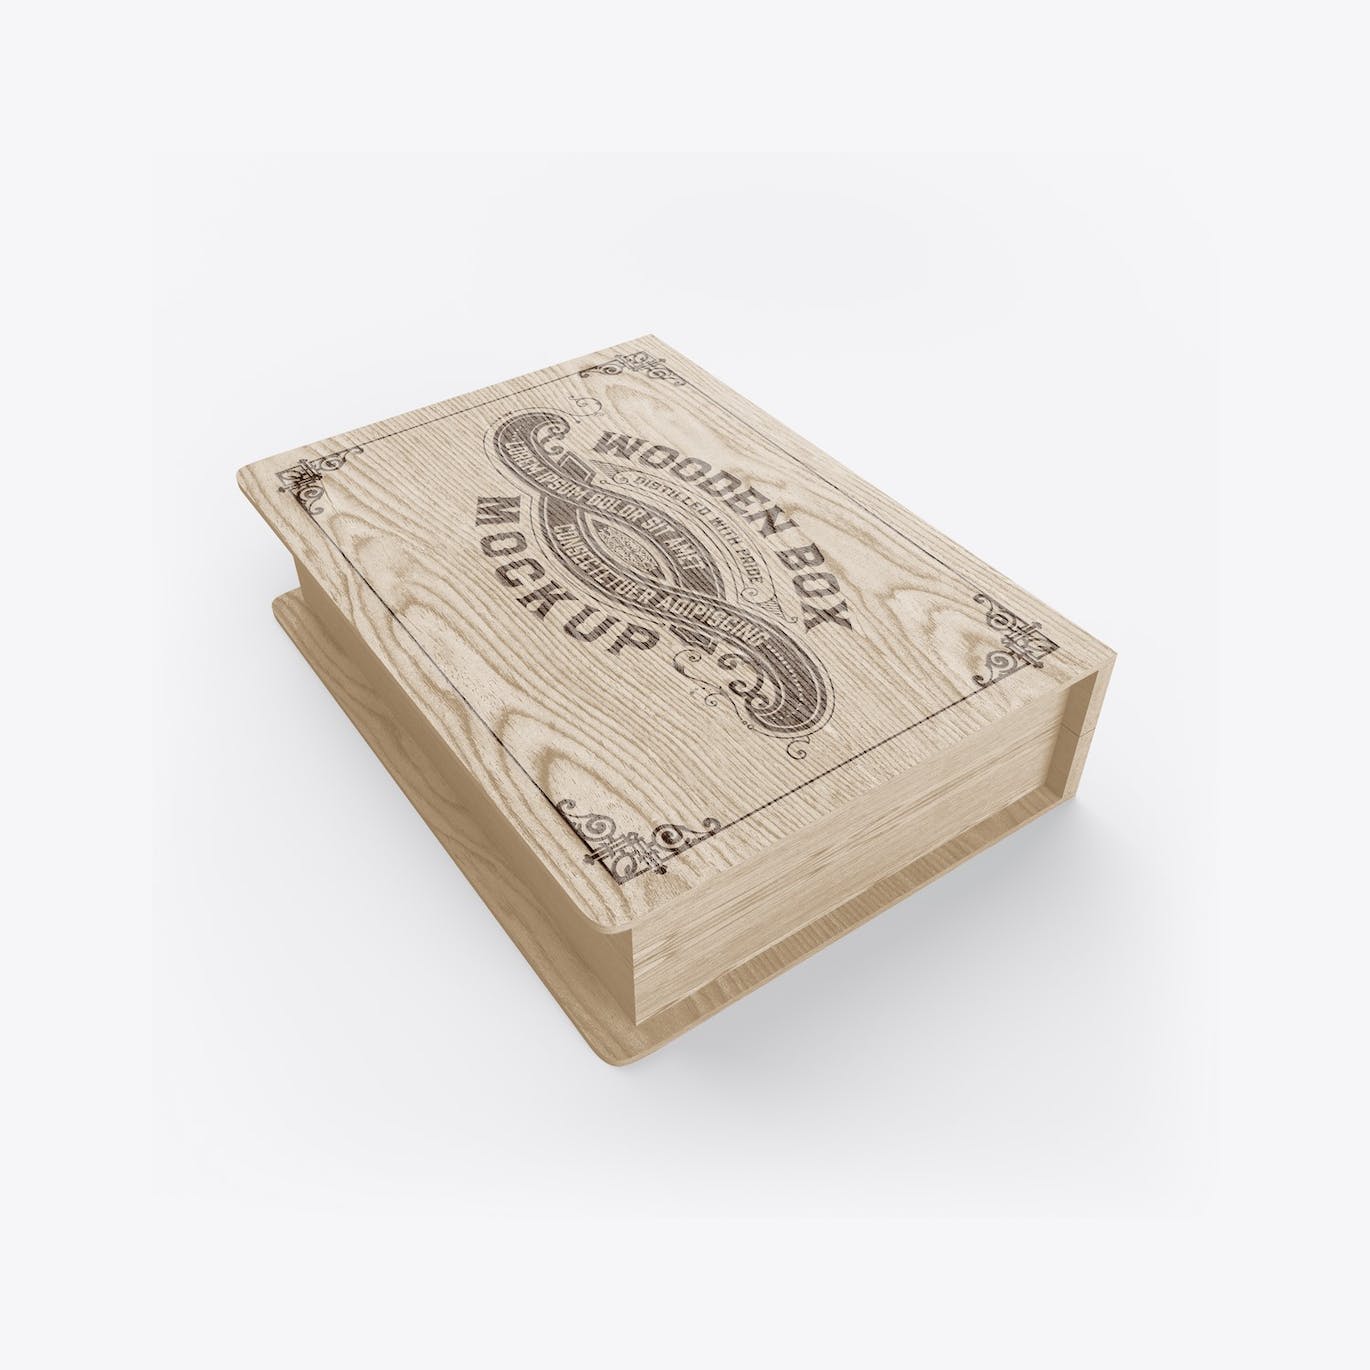 木箱木盒Logo设计样机 Wooden Box Mockup 样机素材 第10张